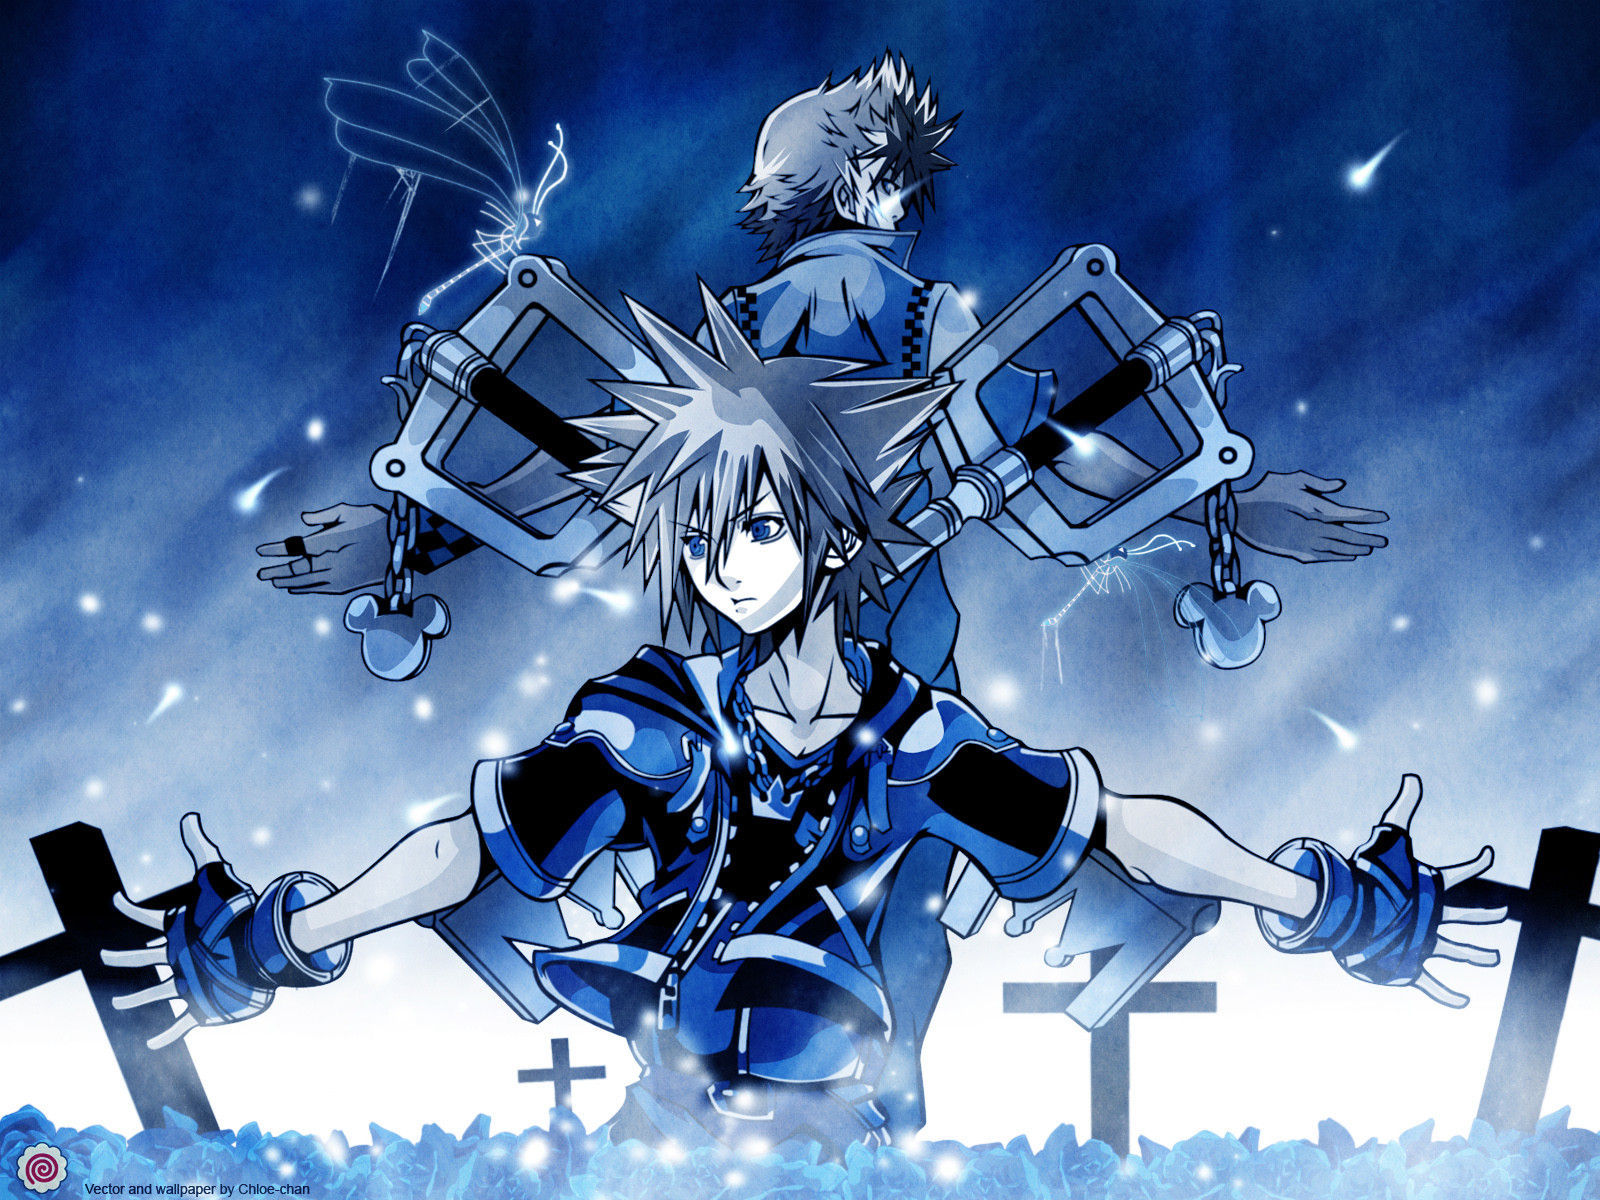 4637 - ¿Reconocerás estos personajes de Kingdom Hearts?